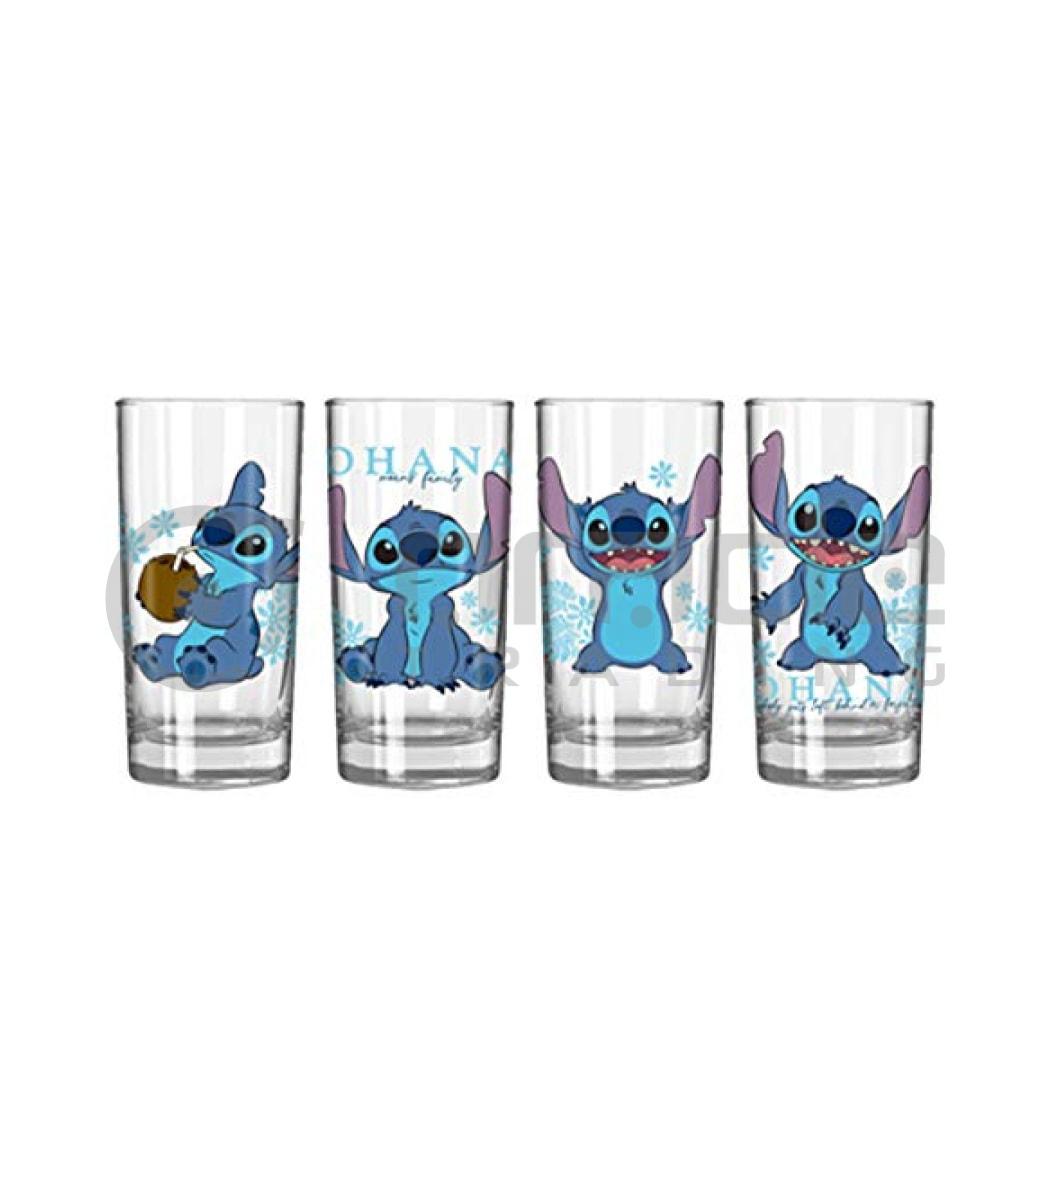 Lilo & Stitch 4pc Tumbler Set - Blue Floral